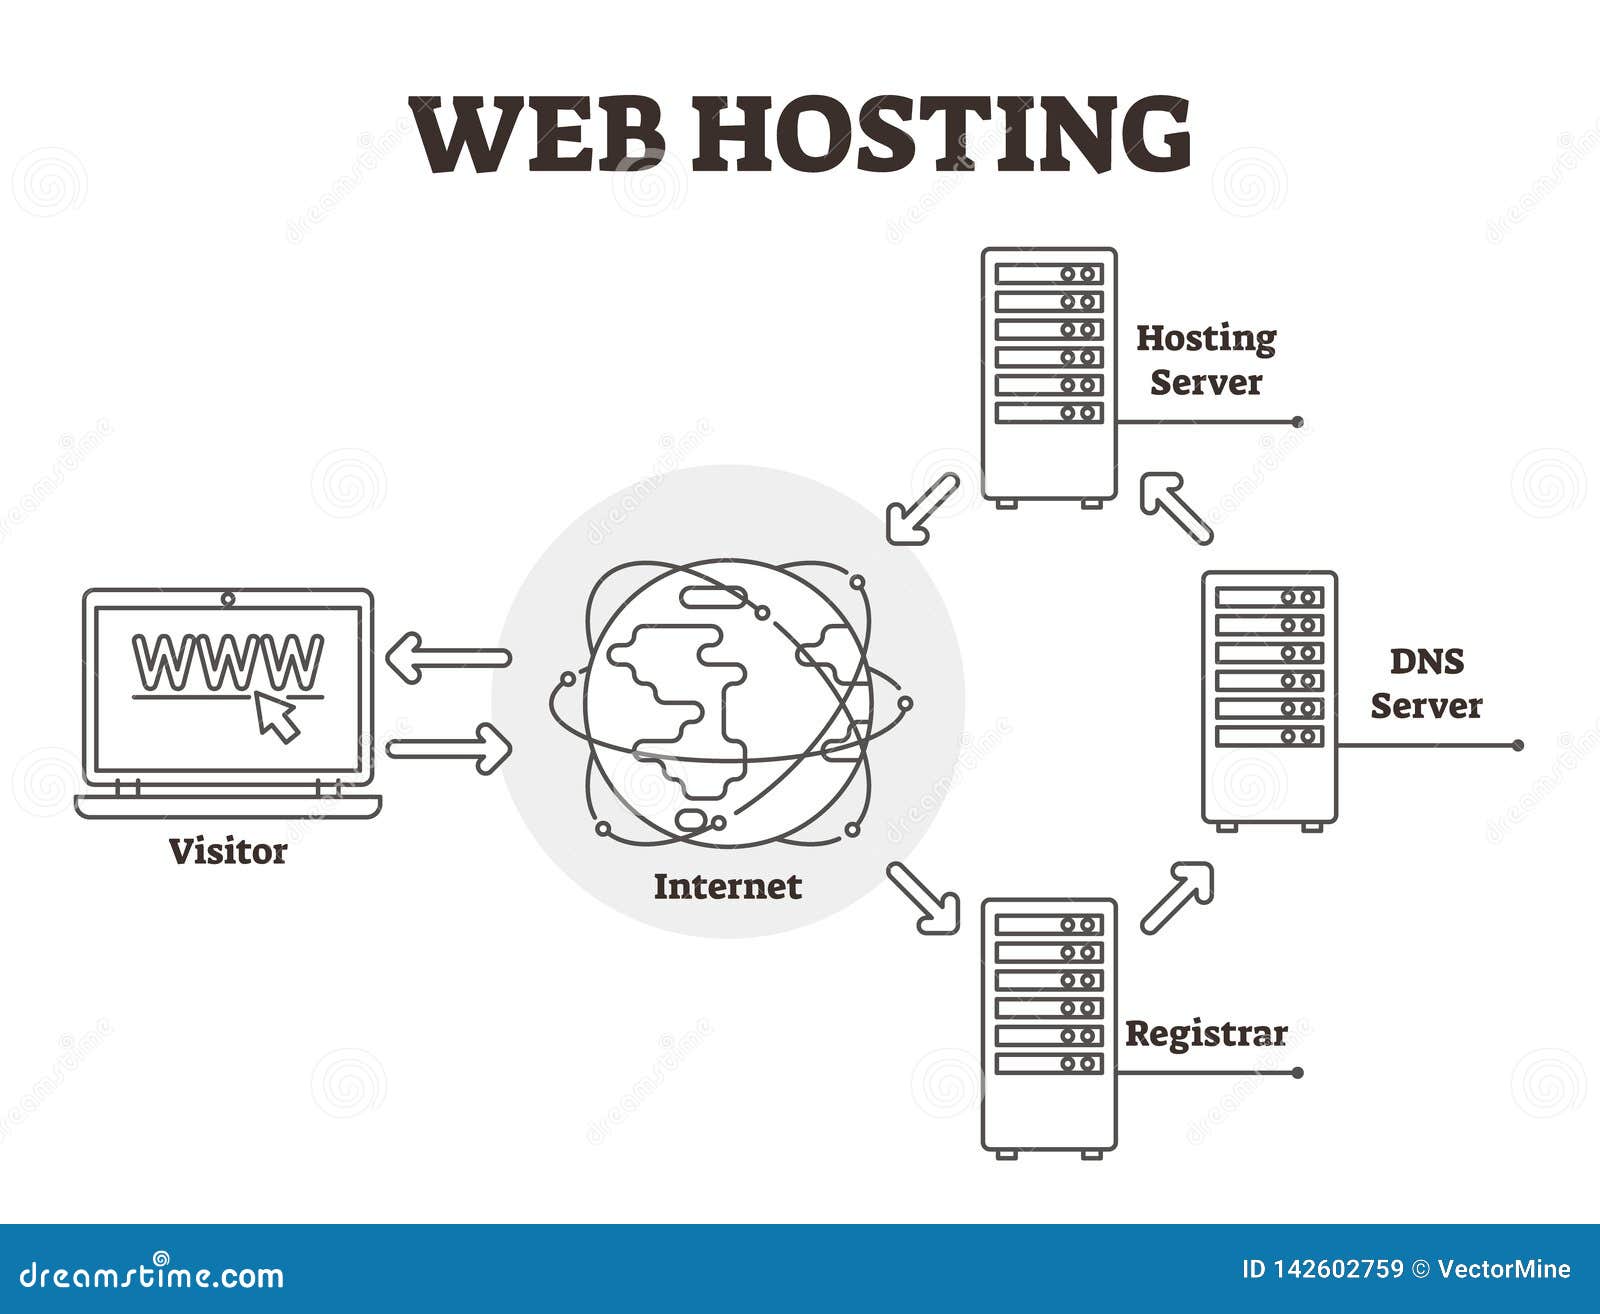 web hosting diagram  . bw labeled outlined server scheme.